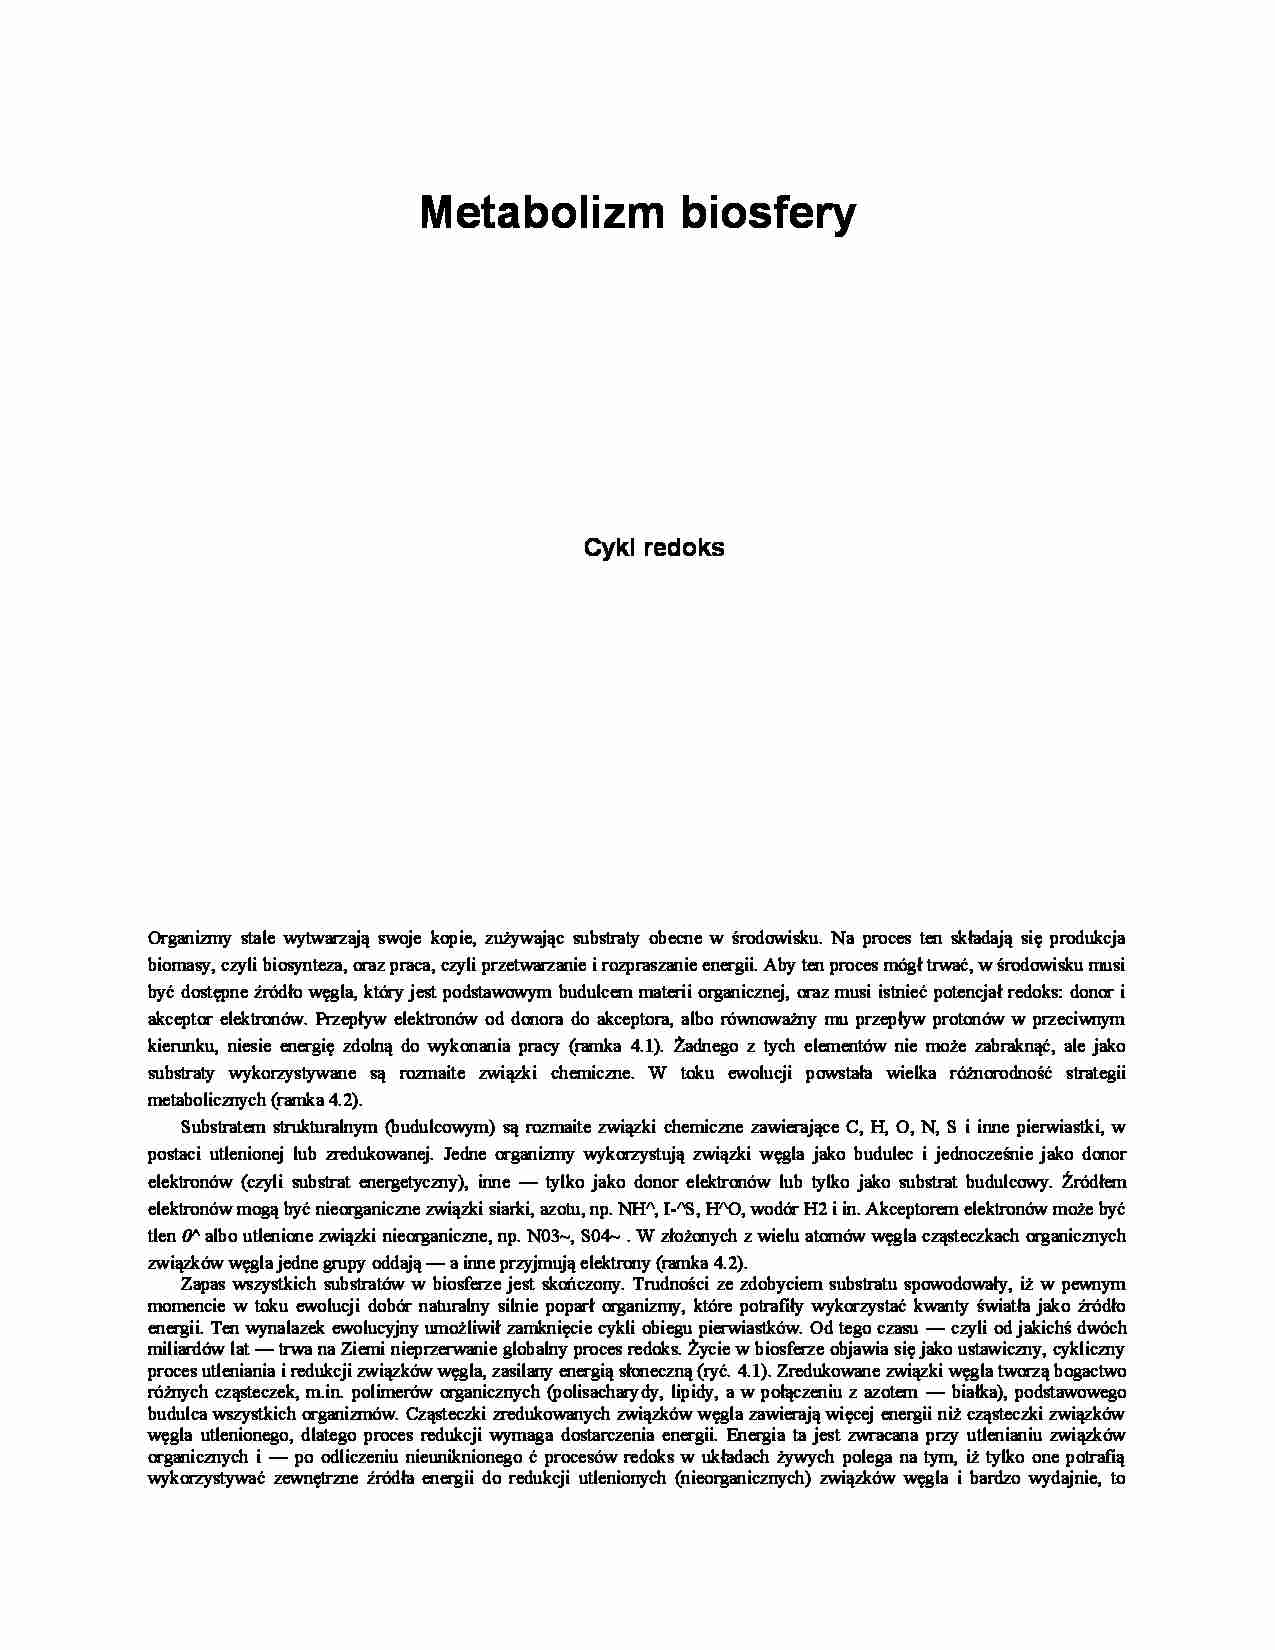   Metabolizm biosfery - omówienie - strona 1